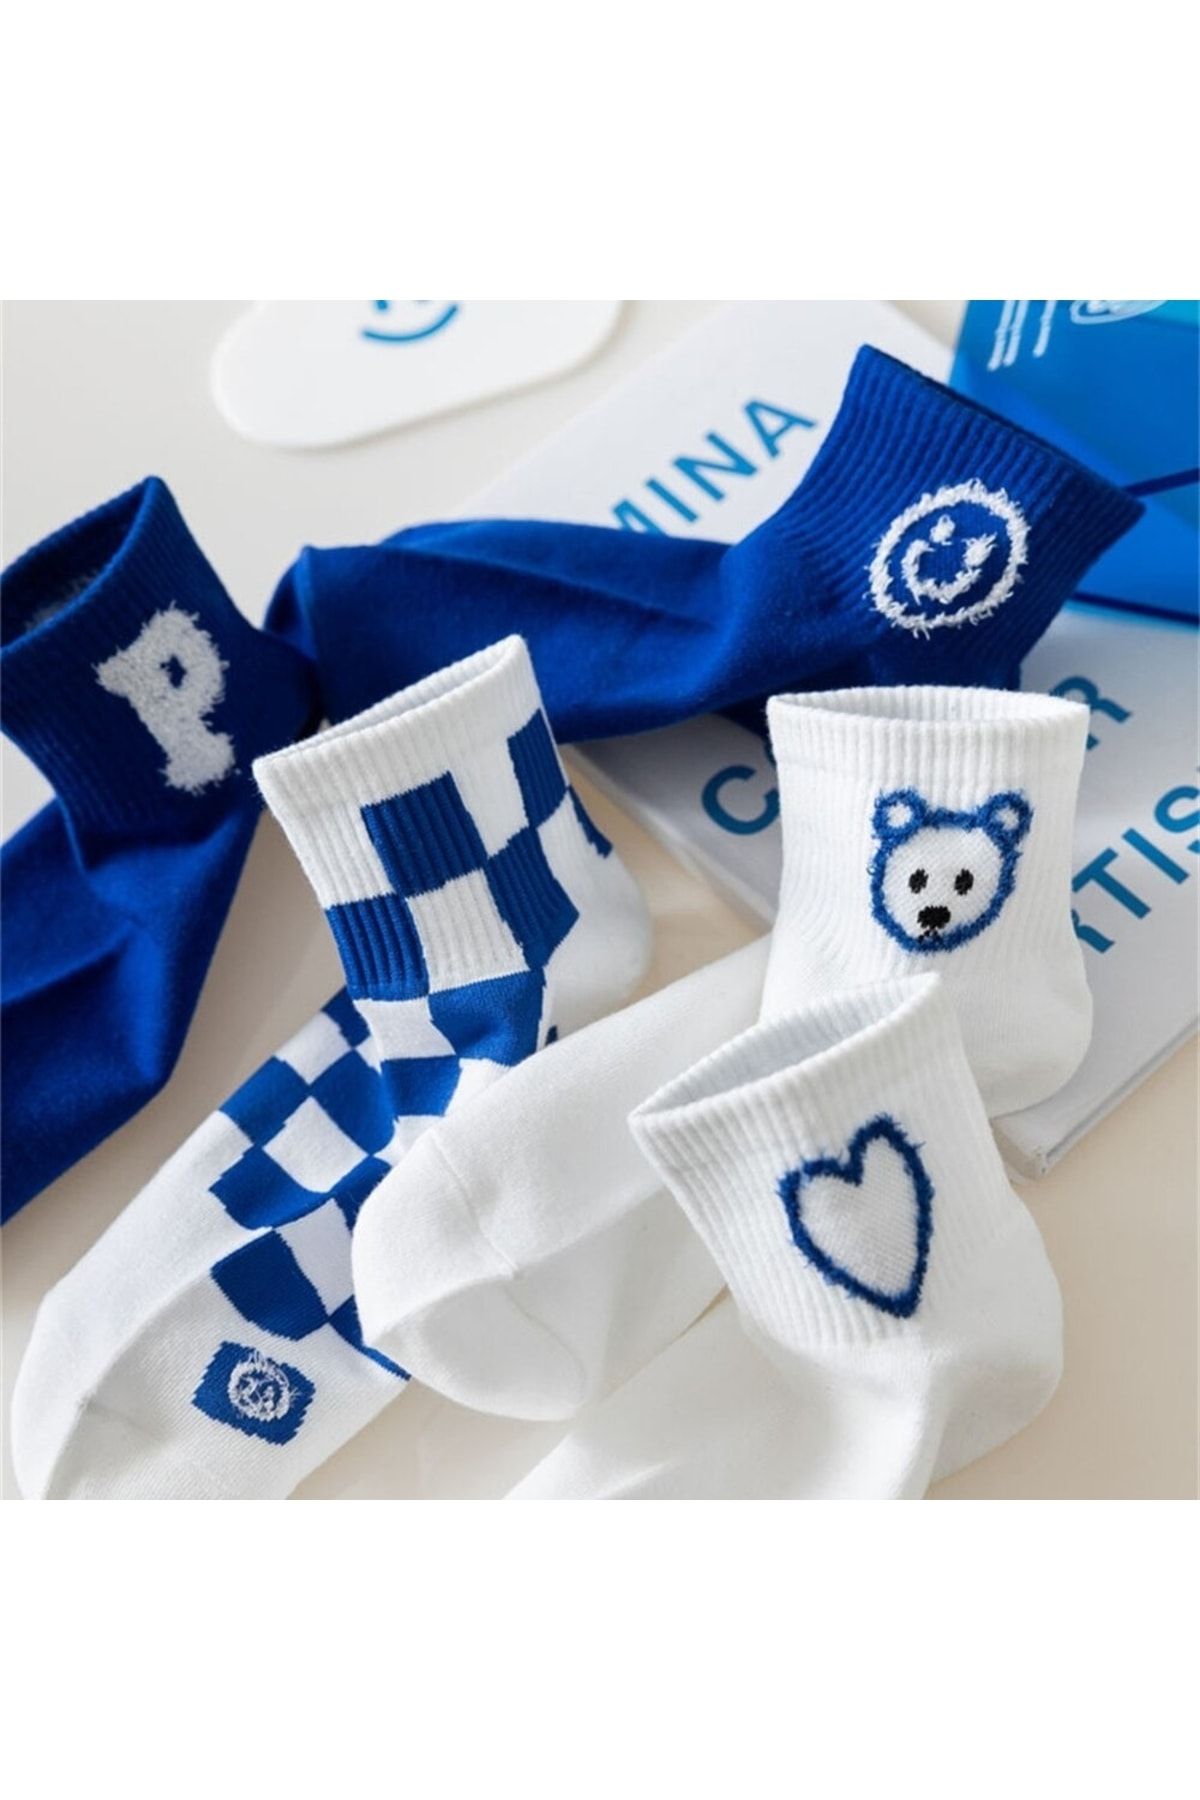 çorapmanya 5 Çift Panda Desenli Mavi Beyaz Unisex Kolej Tenis Çorap